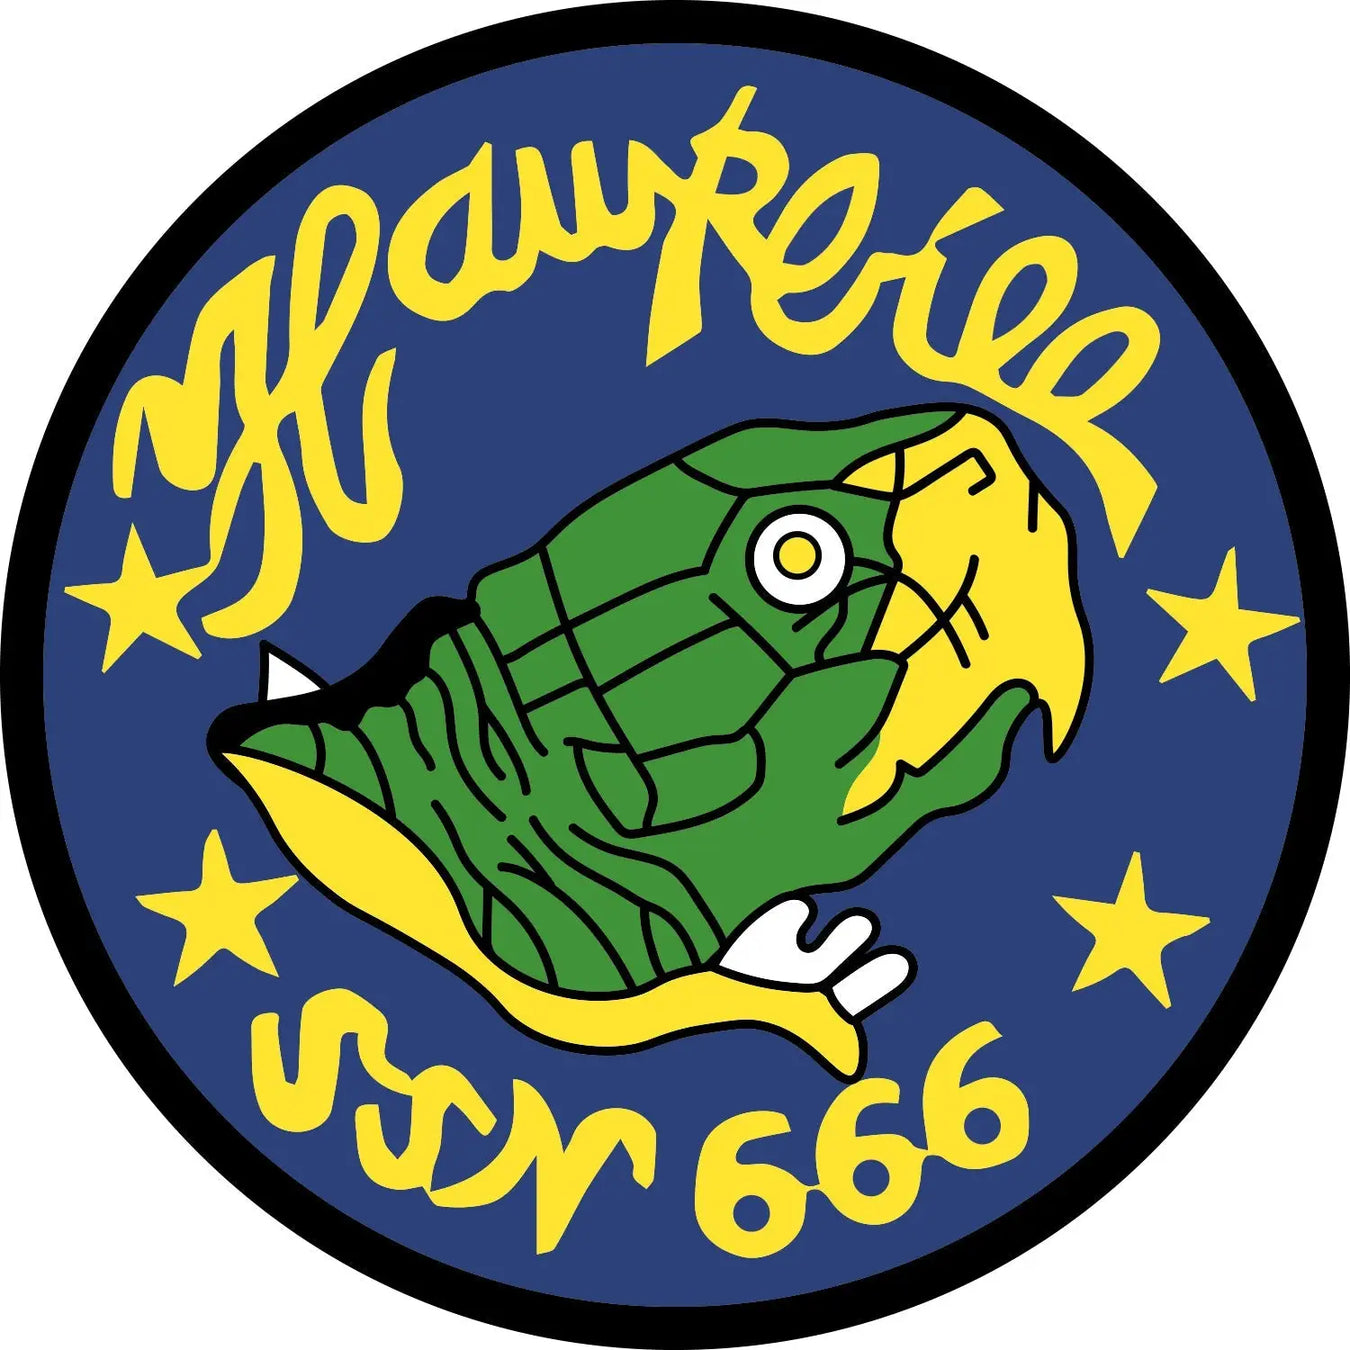 USS Hawkbill (SSN-666)